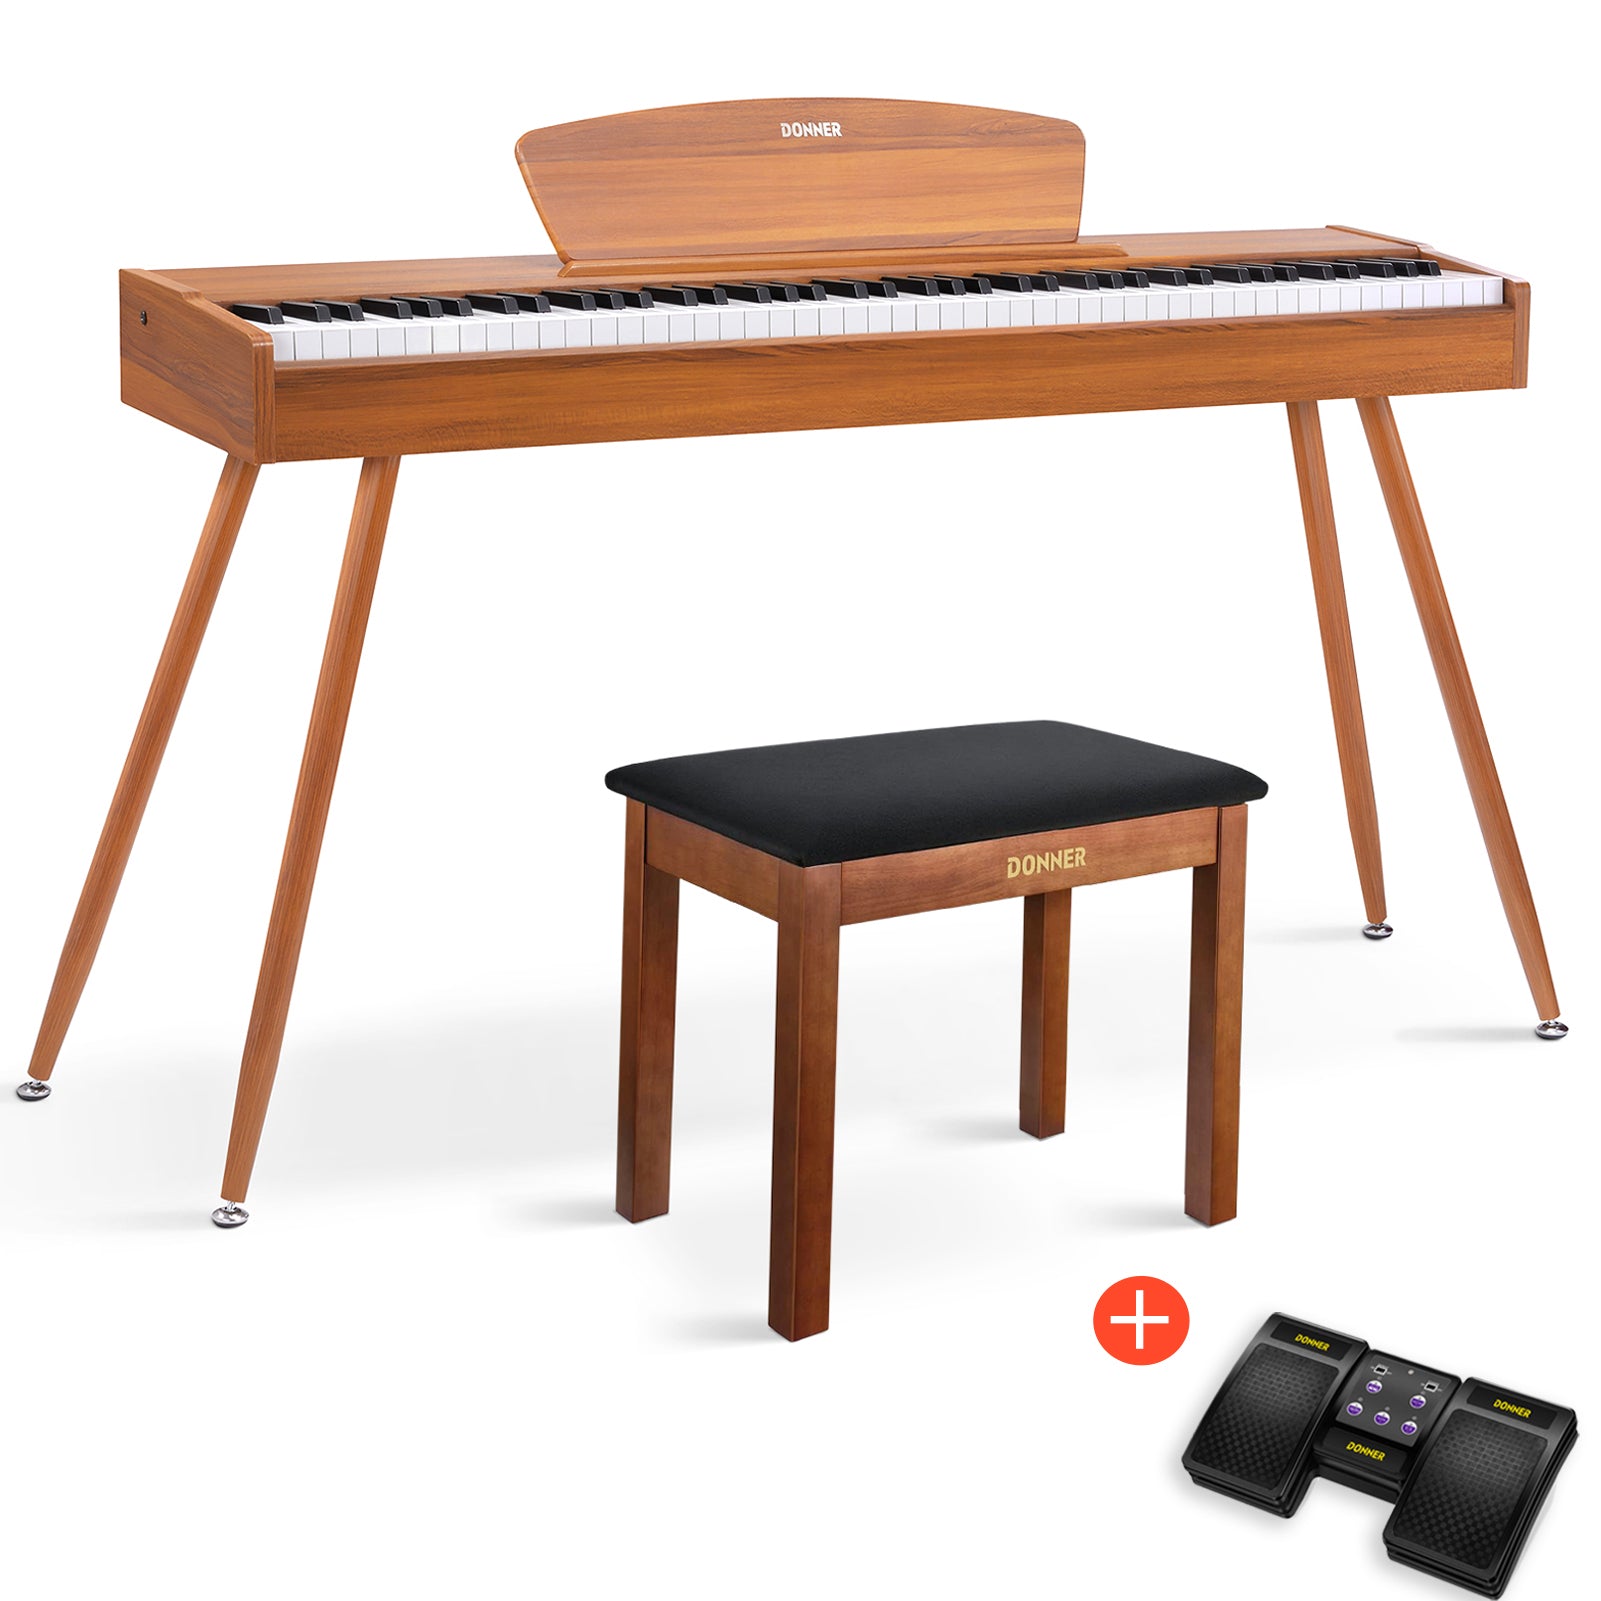 Donner DDP-80 Digital-Piano für Zuhause 88 gewichtete Tasten & Stilvolles Holzdesign mit 3 Pedale - Natürlich / Piano + Brauner Klavierbank + Page Turner von Donner